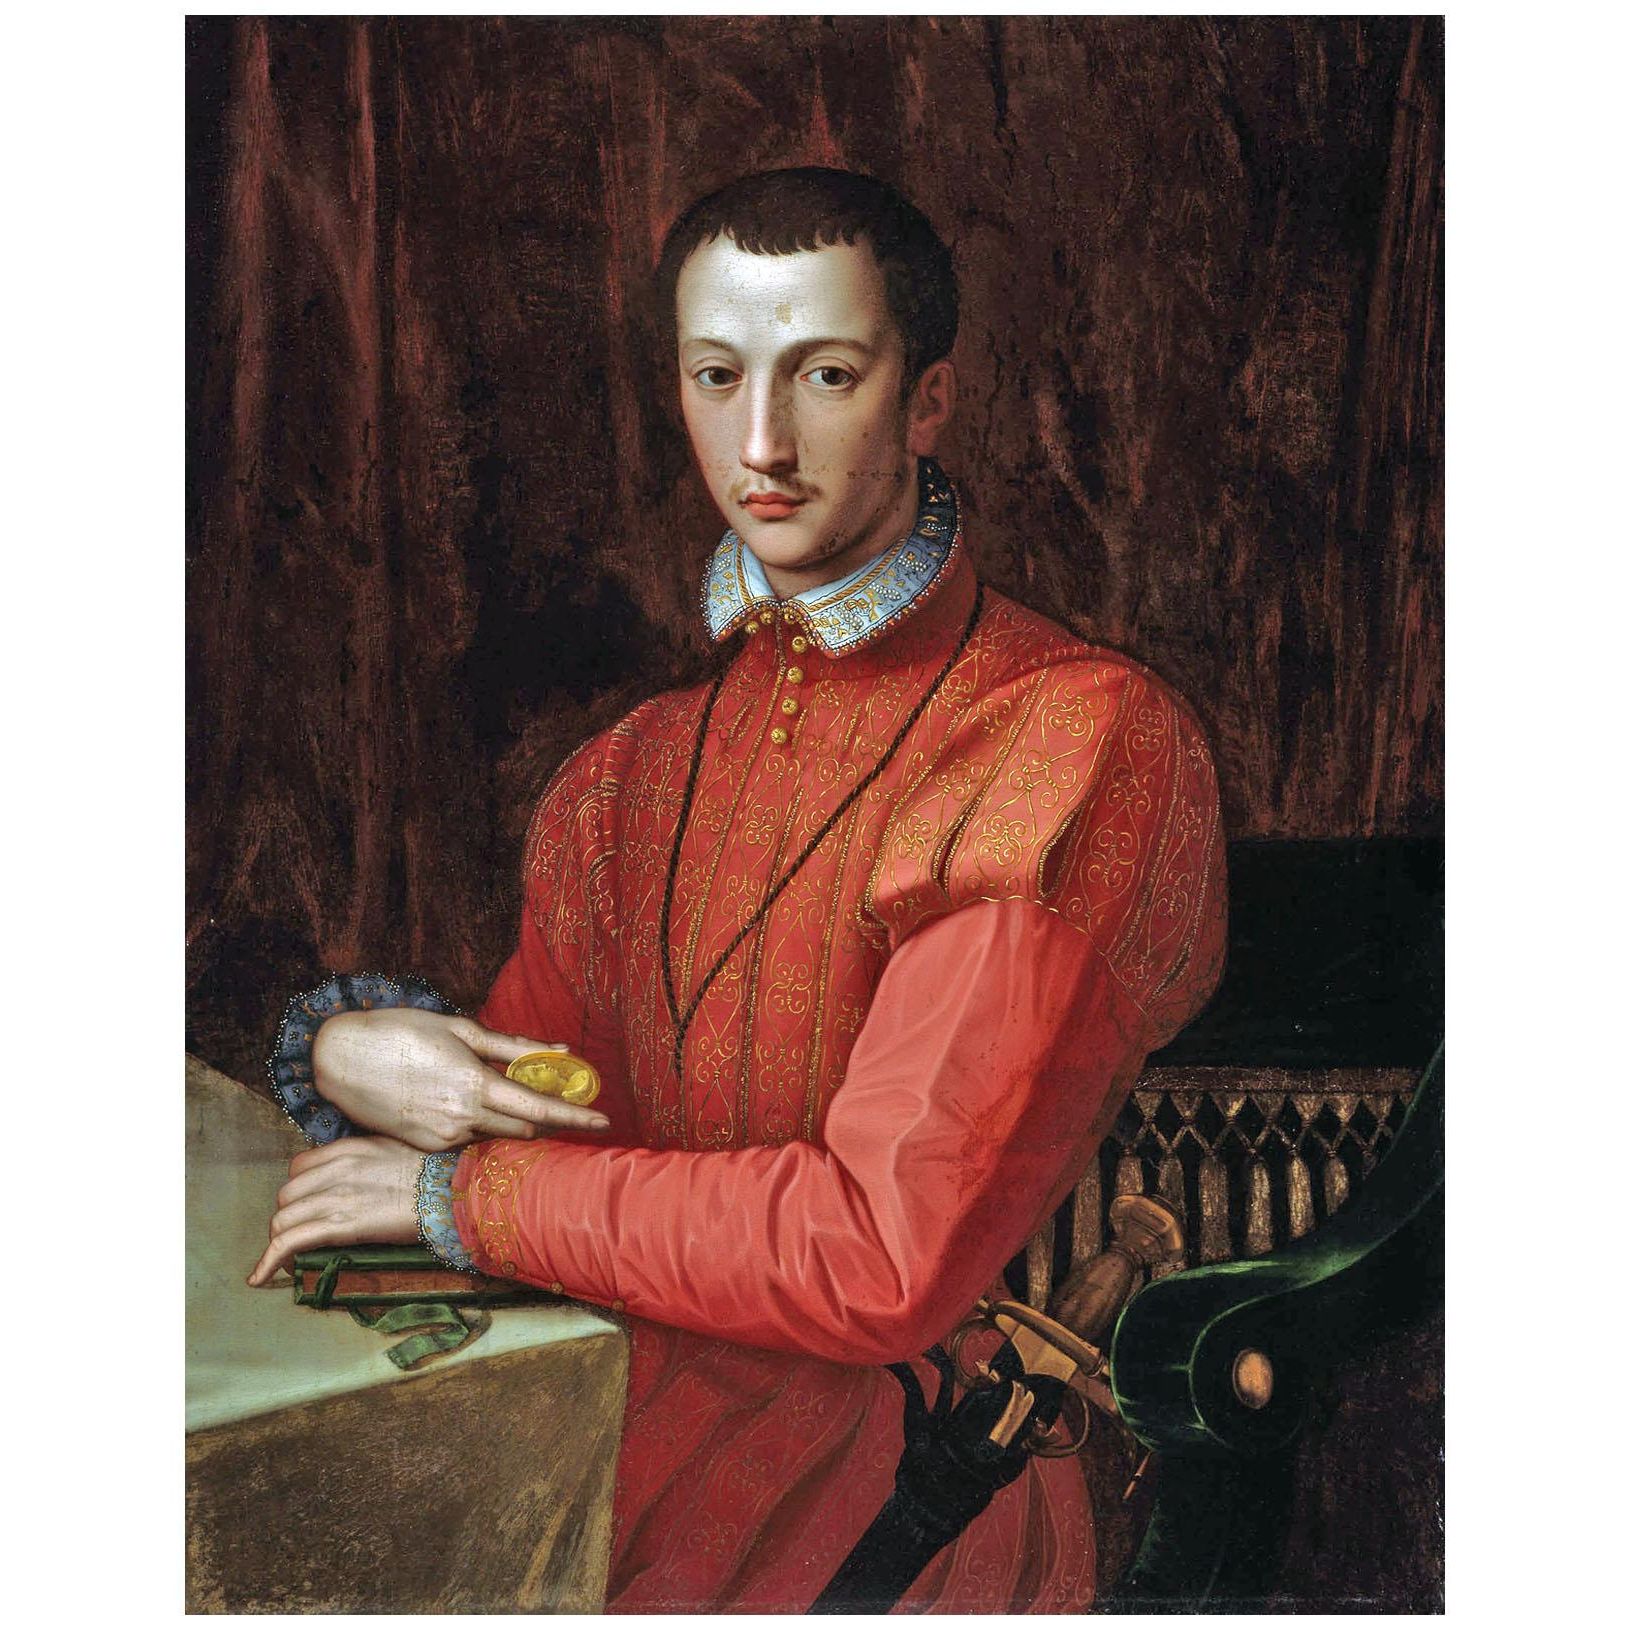 Alessandro Allori. Francesco de’ Medici. 1565. Art Institute of Chicago